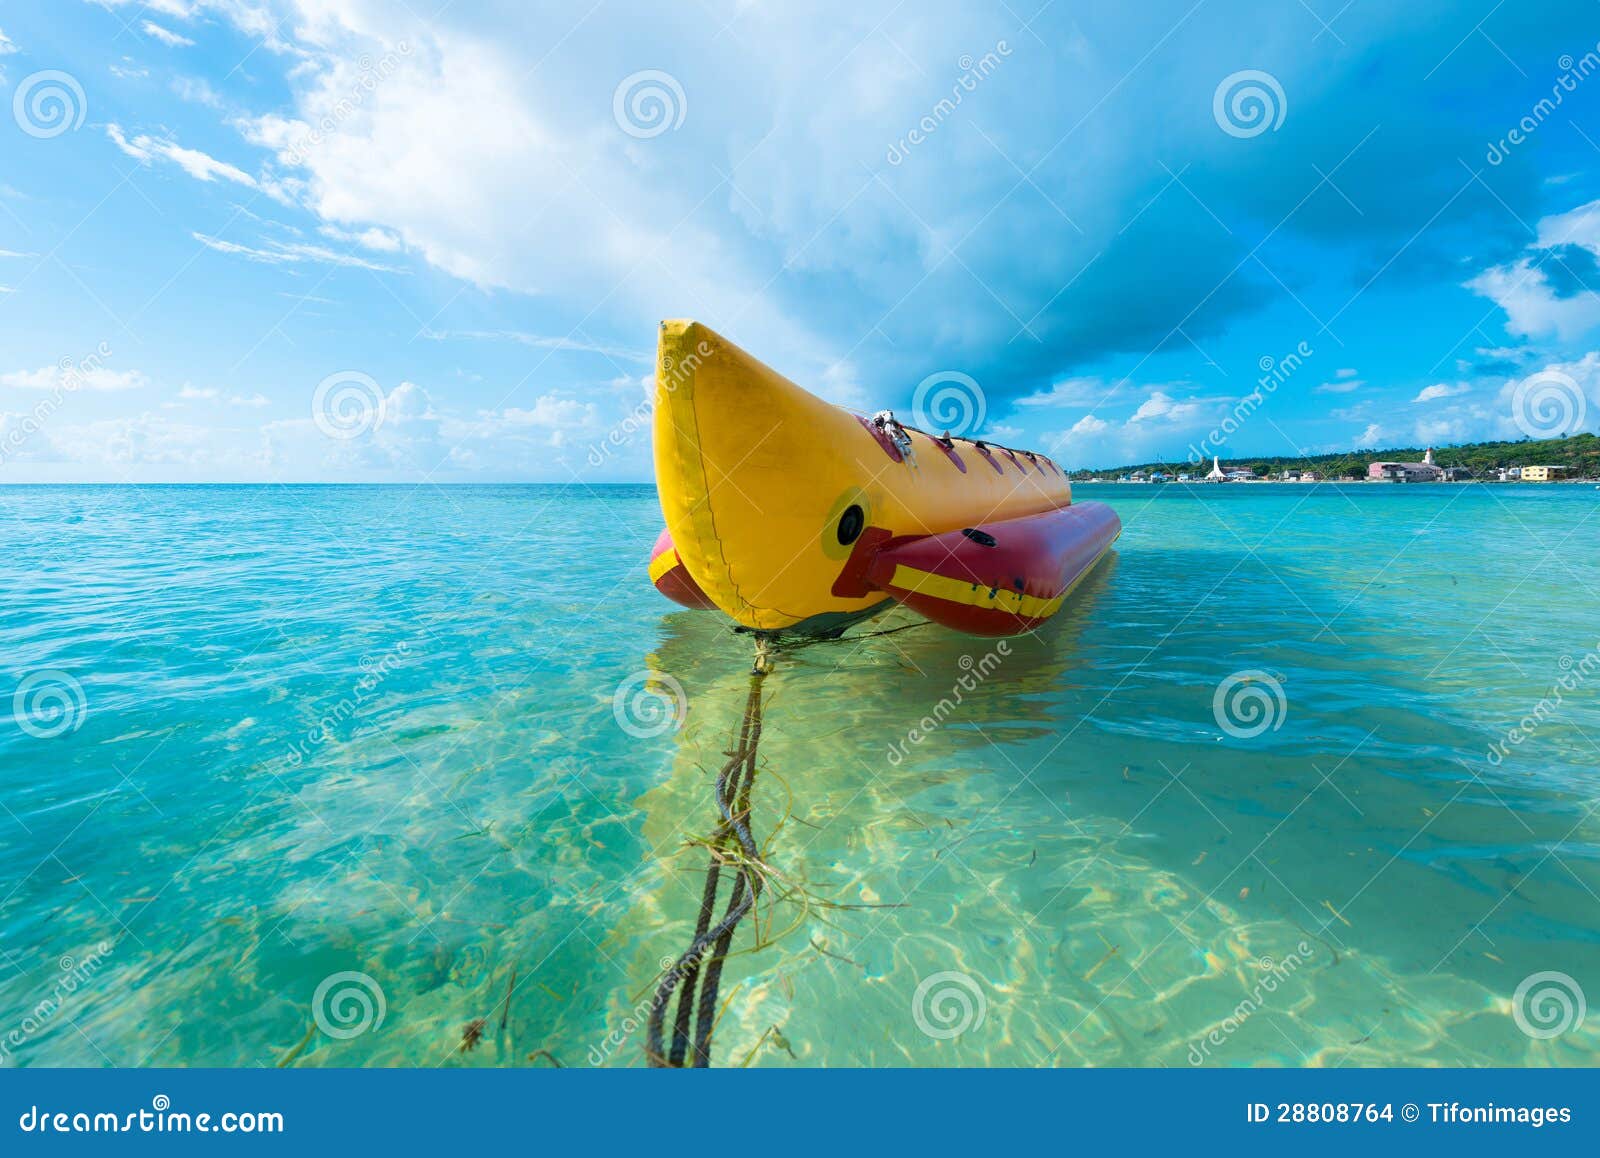 Inflatable banana boat at Caribbean Sea, San Andres Island, Colombia 